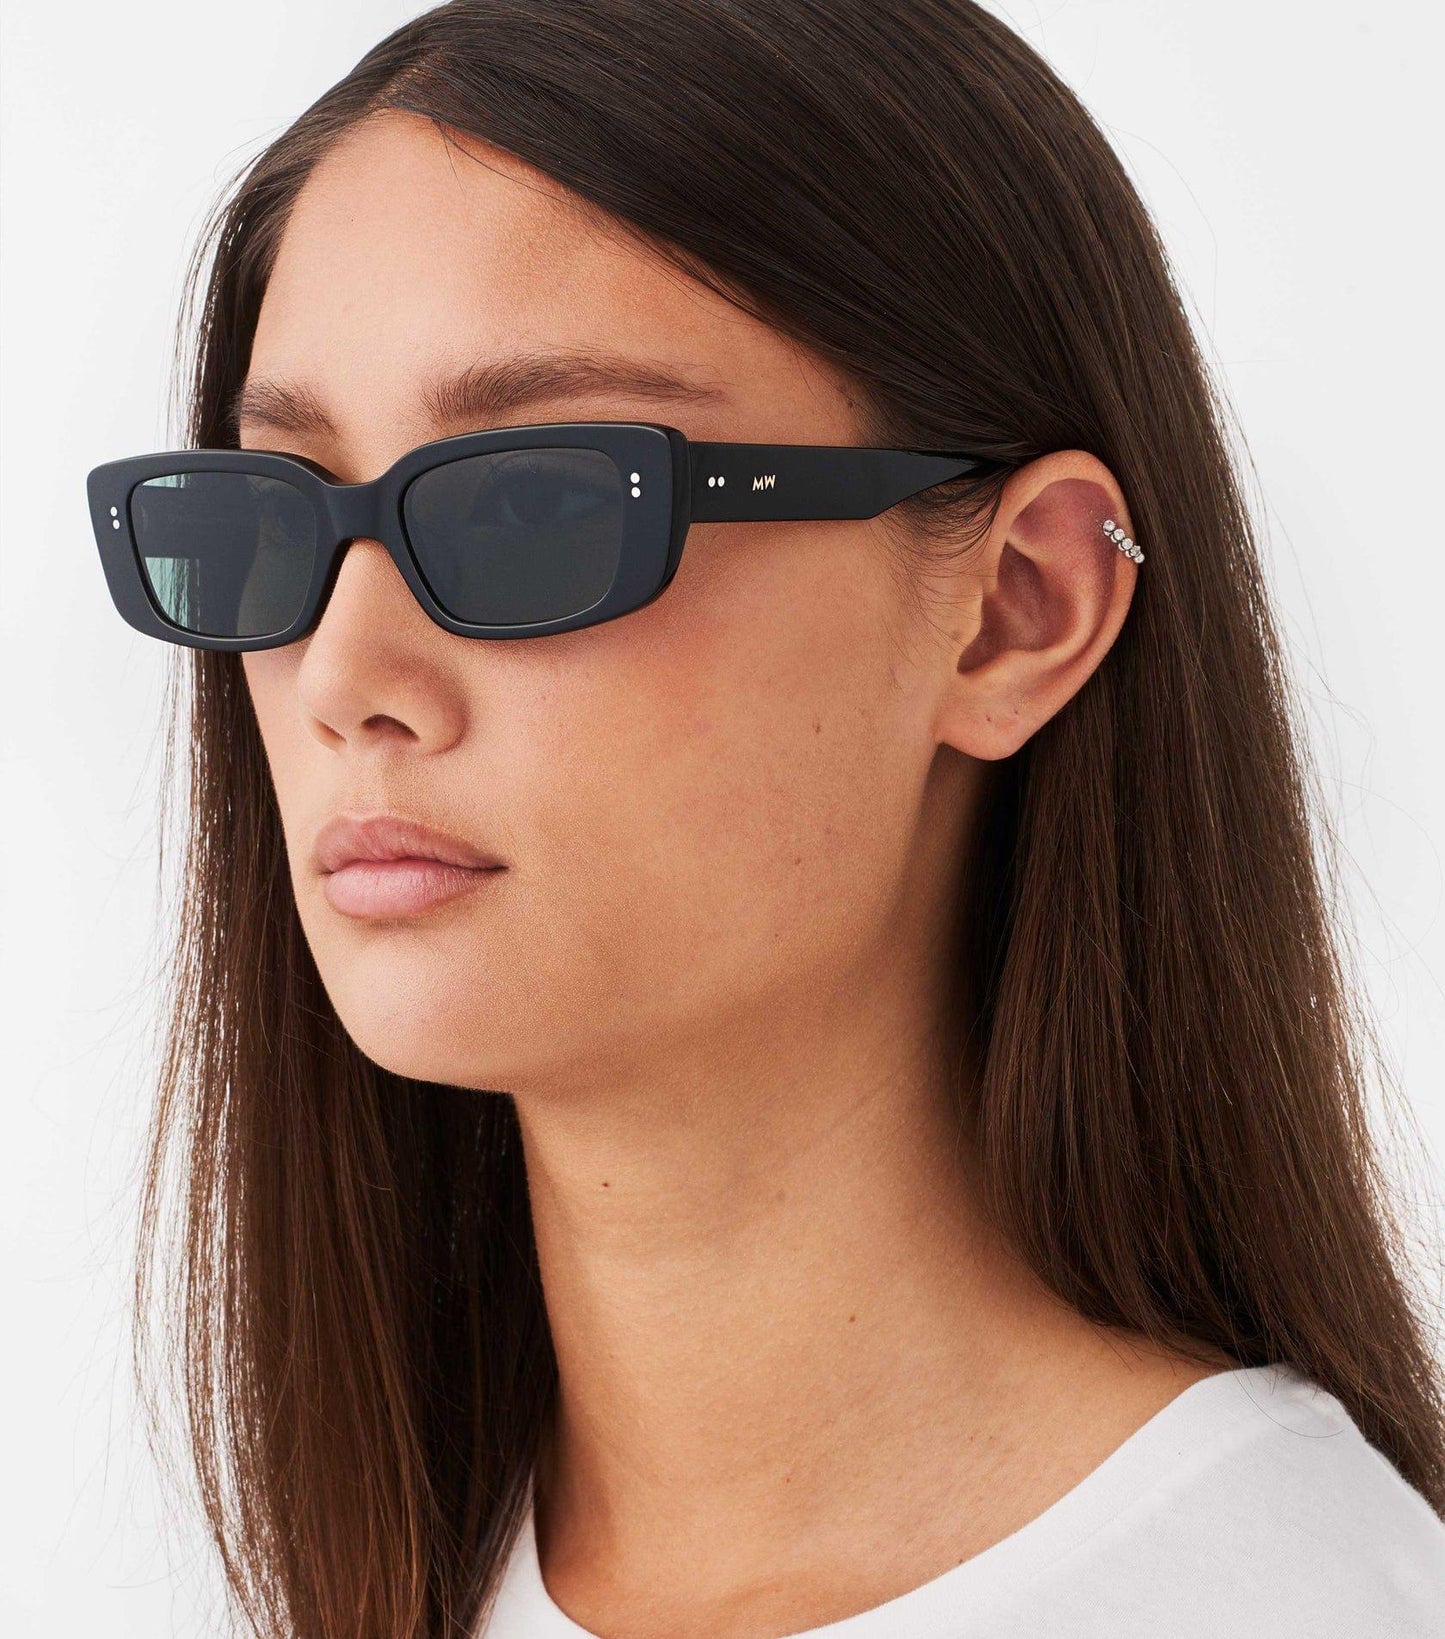 Grace, Rectagular sunglasses for men and women black green lens UV400 protection